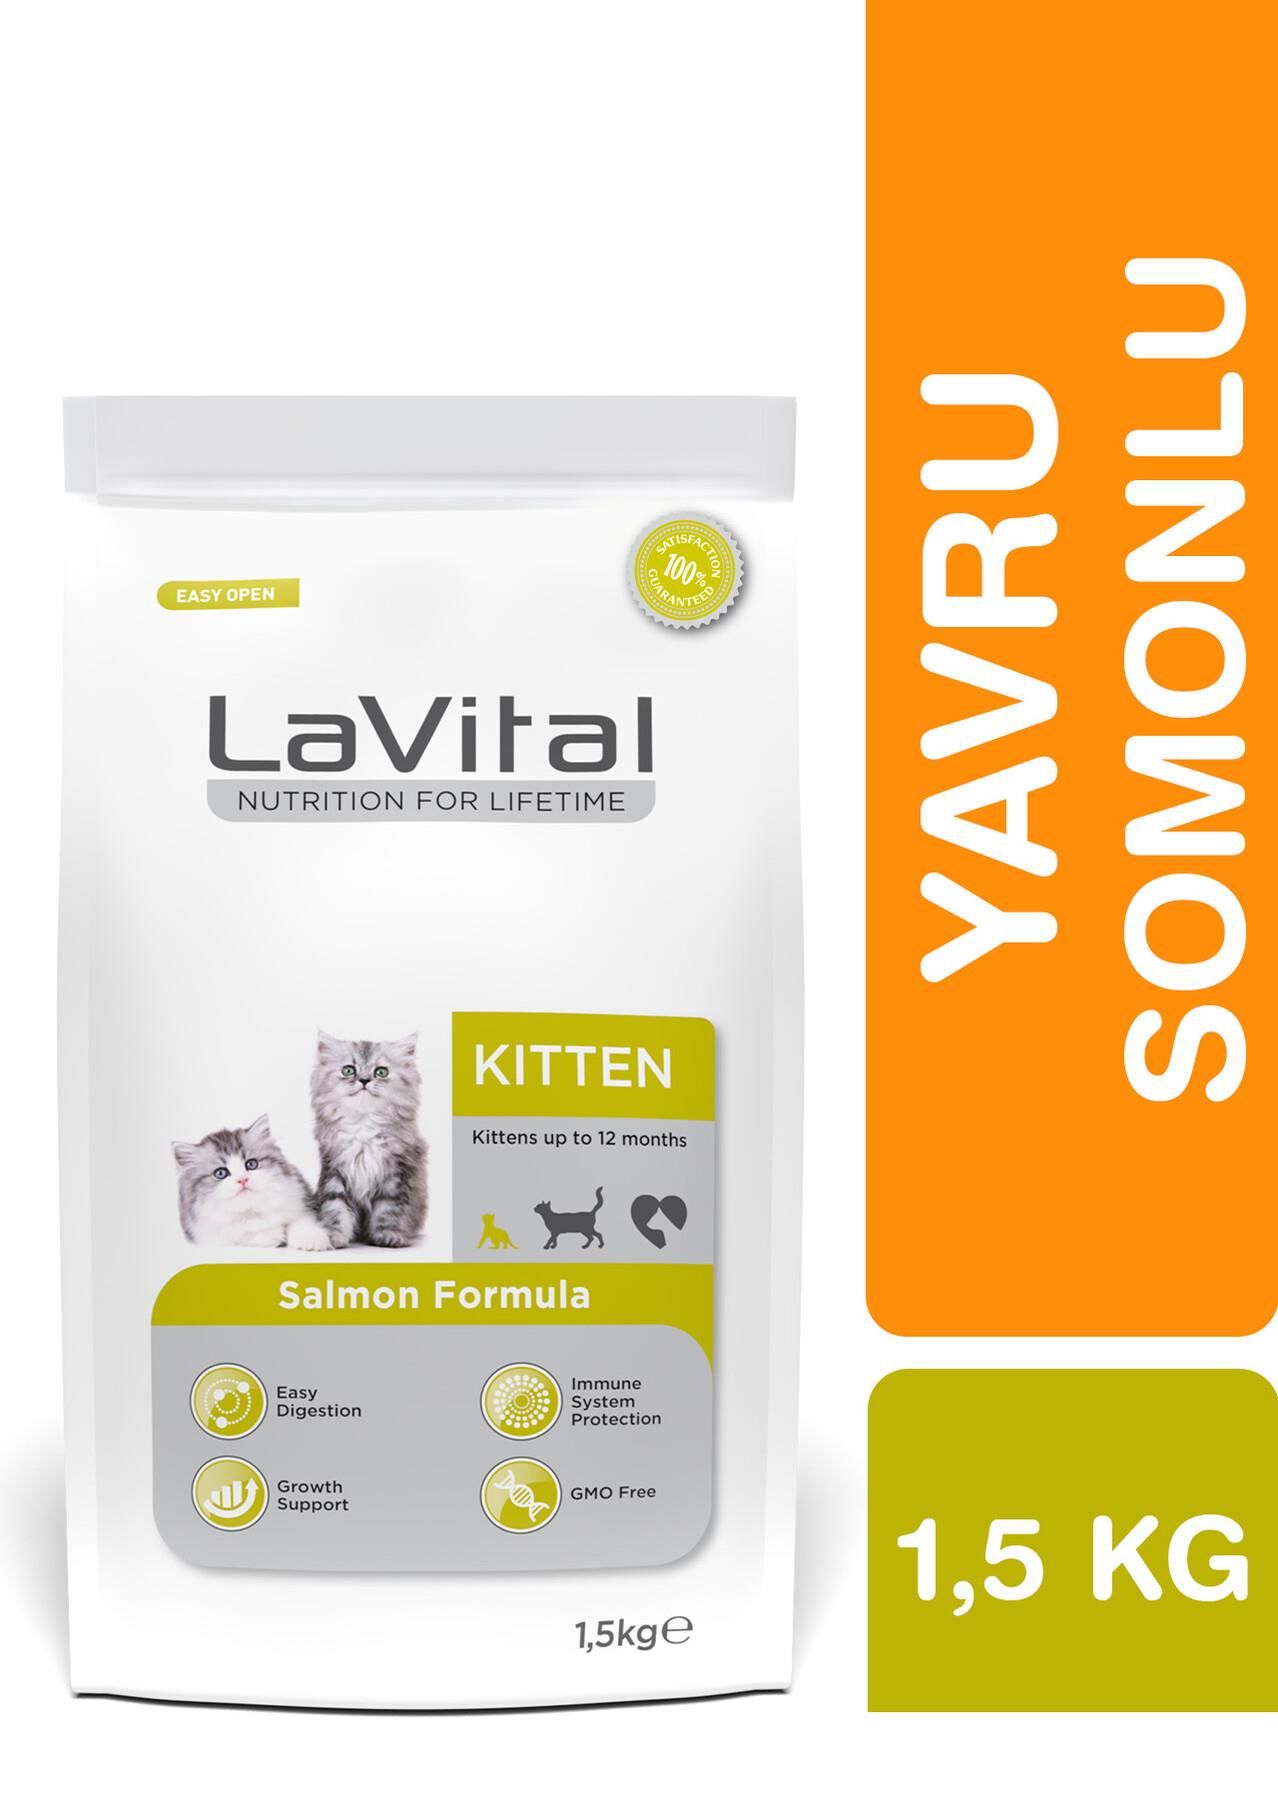 LaVital Kitten Somonlu Yavru Kedi Maması 1.5kg